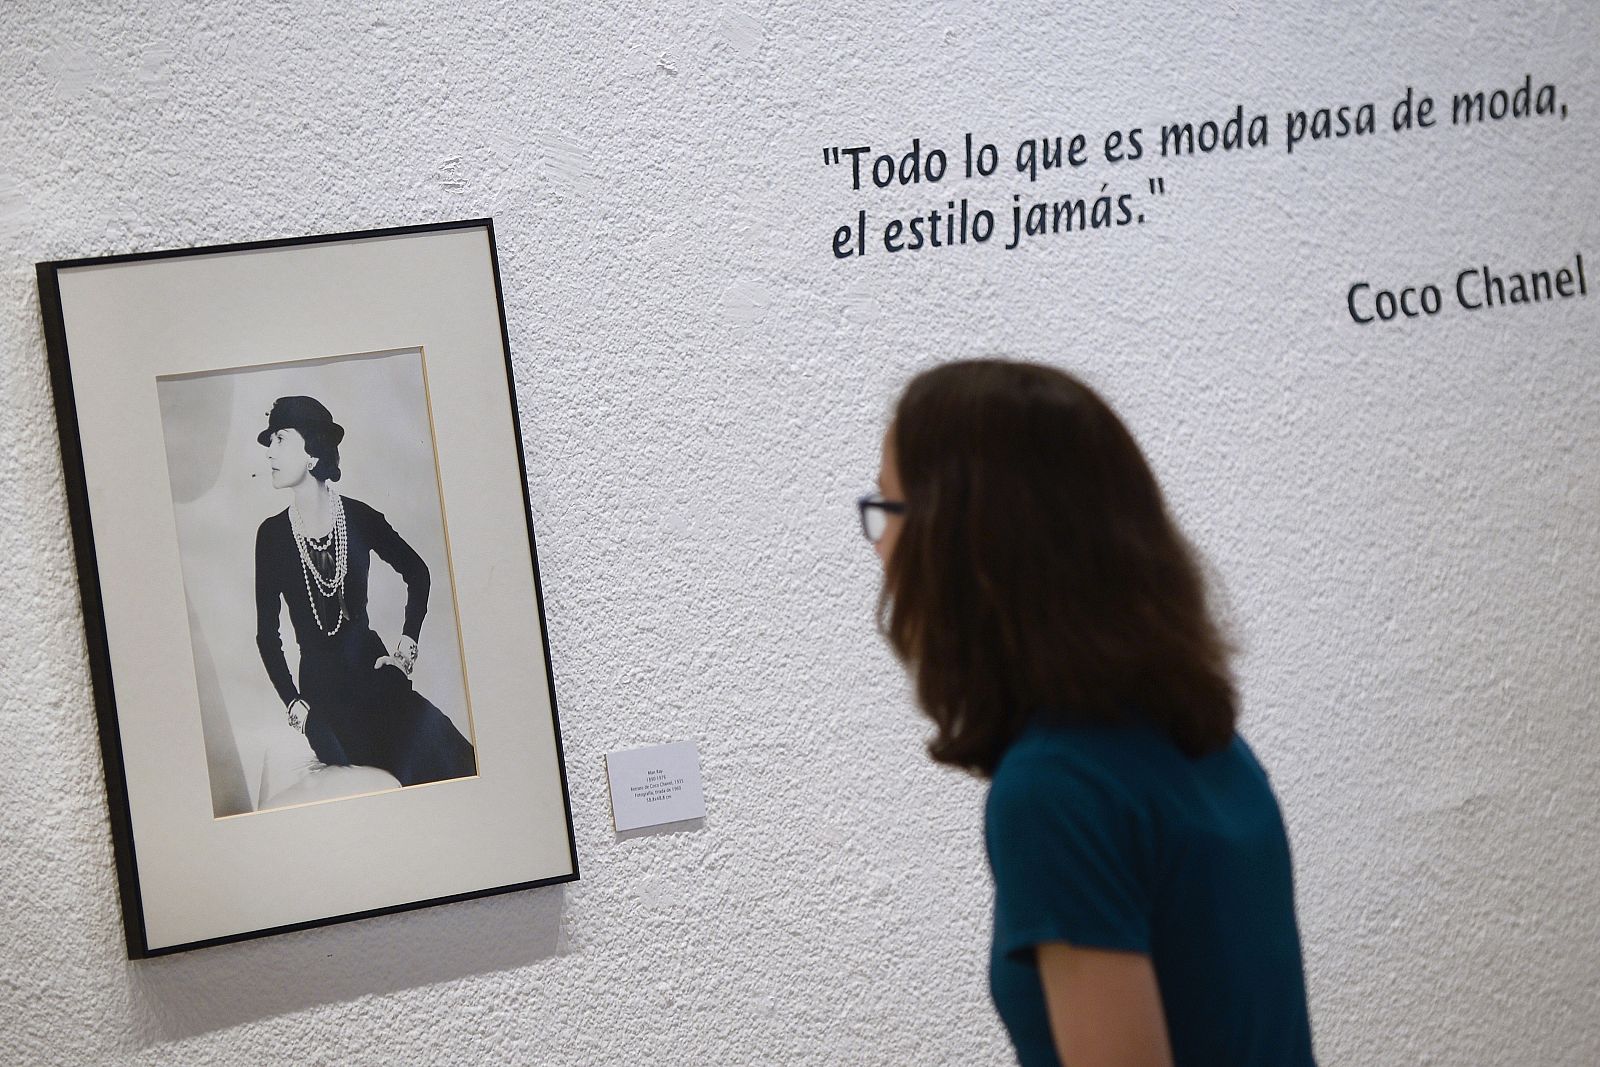 Una mujer observa en una exposición un retrato de Coco Chanel realizado por el fotógrafo Man Ray.